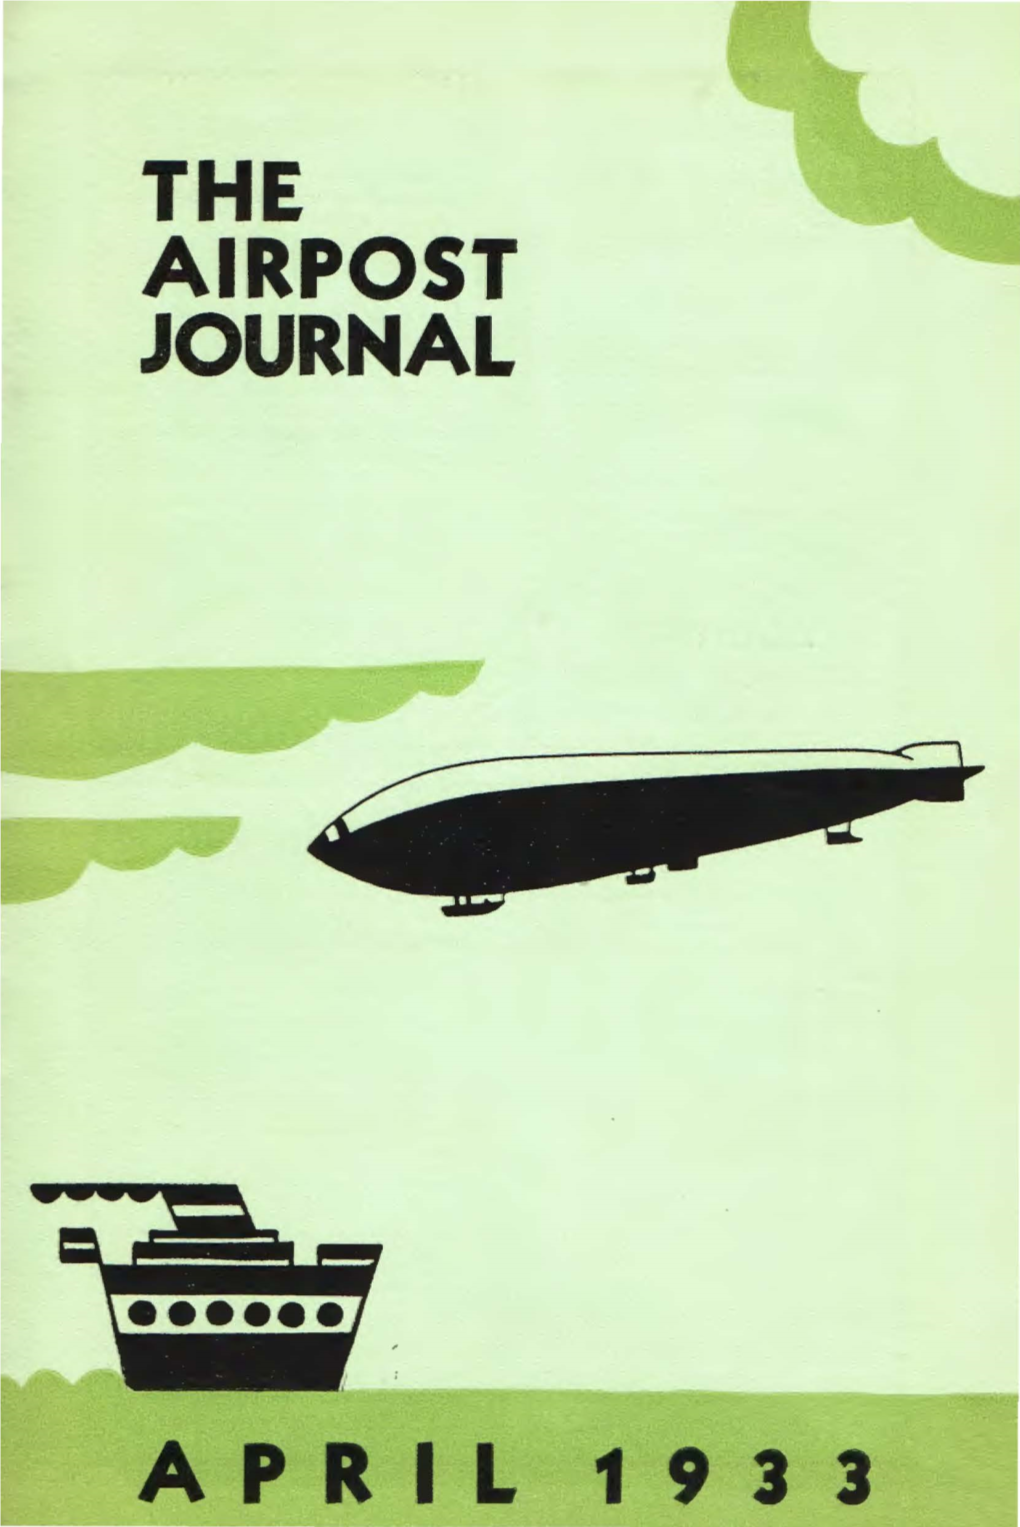 Airpost Journal April 1933